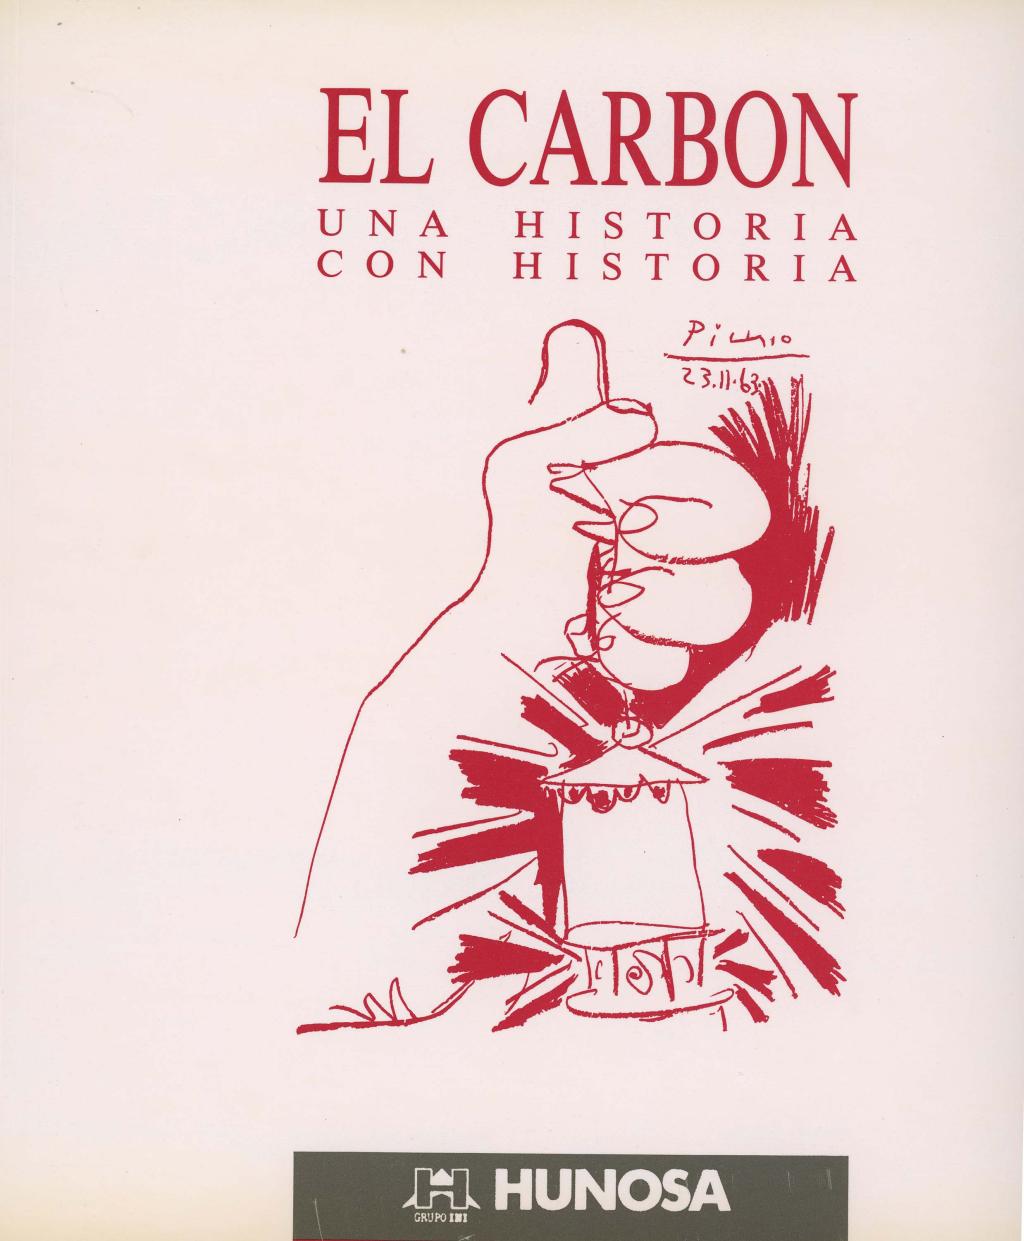 Libros El carbón una historia con historia Archivo Histórico Hunosa Pozo Fondón